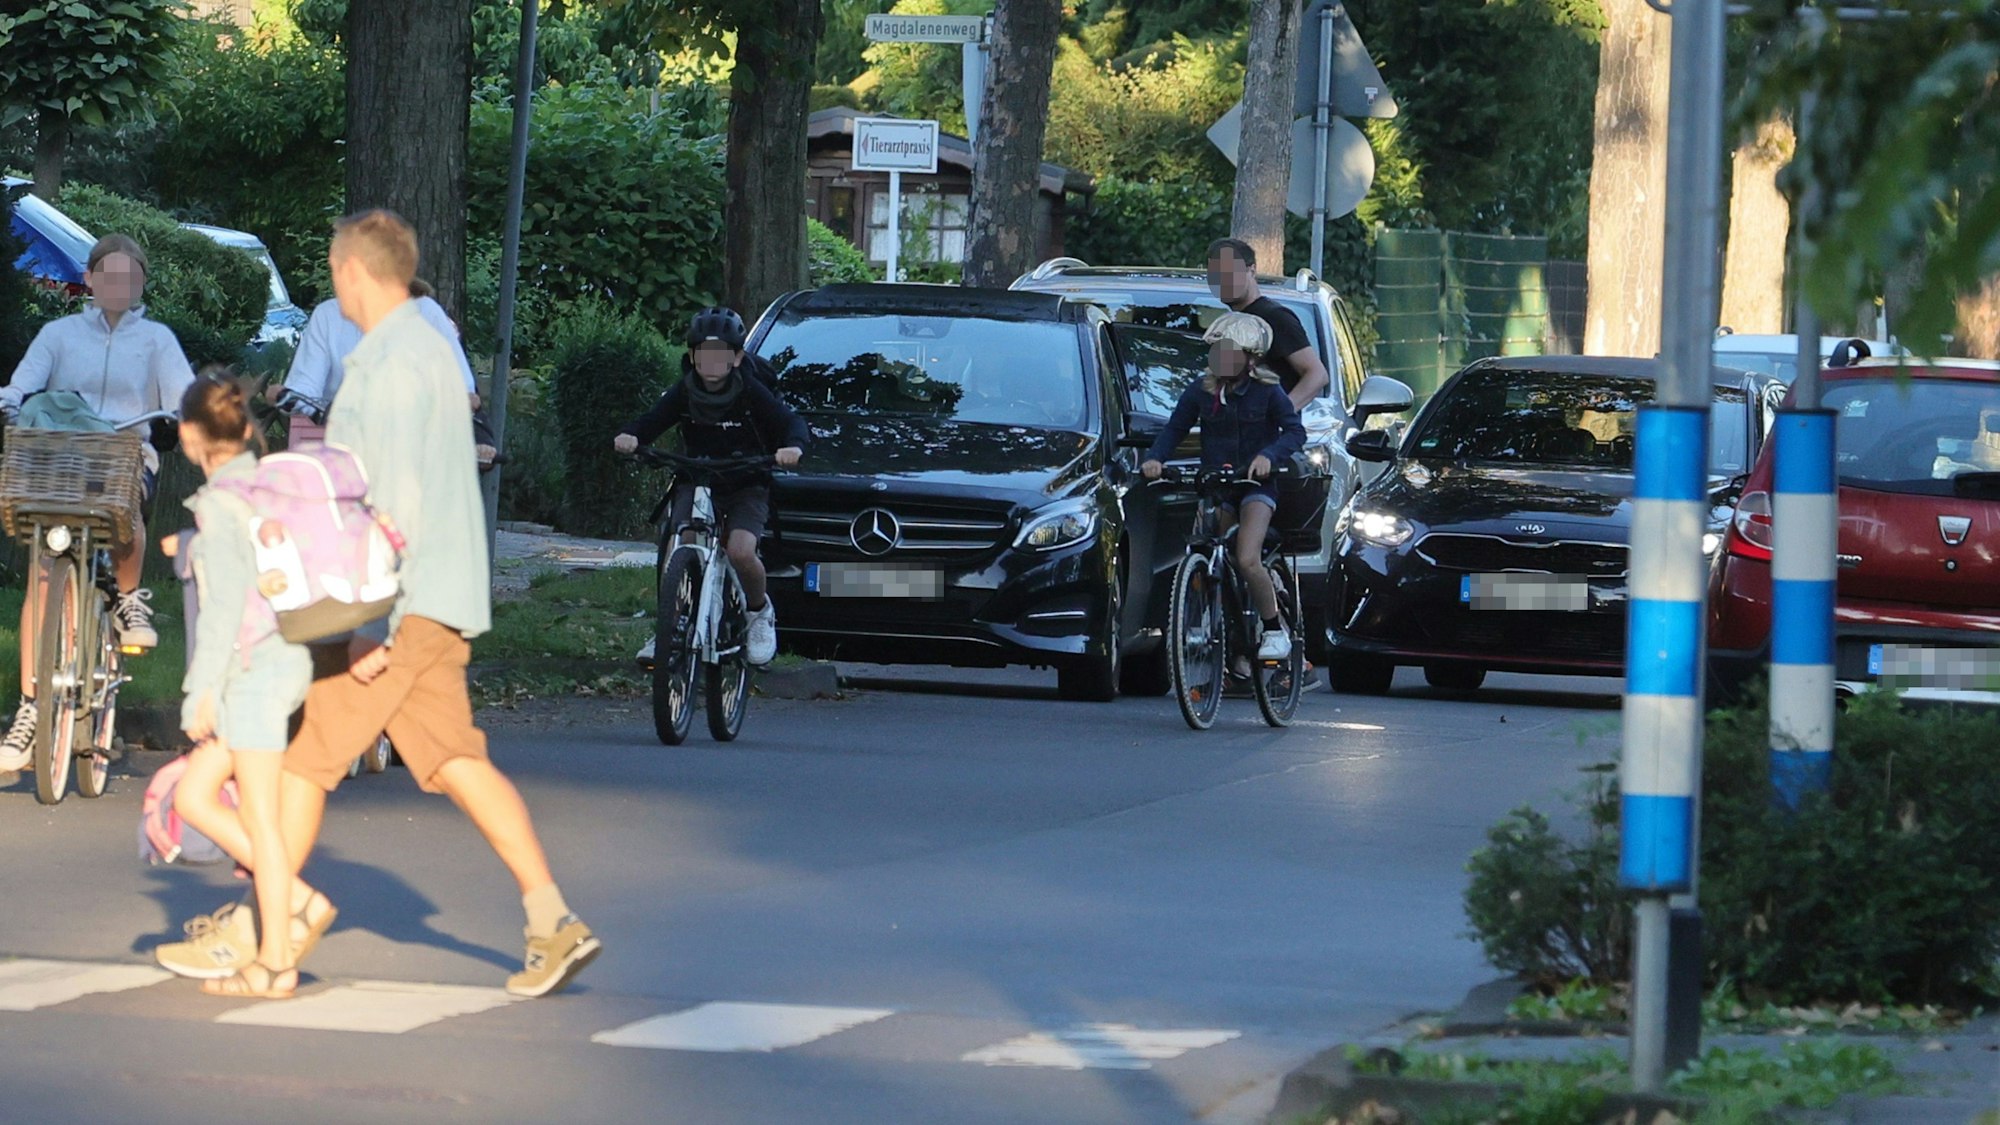 Verkehr vor der Nordschule im September - die SPD fordert nun sicherere Schulwege. (Symbolbild)

